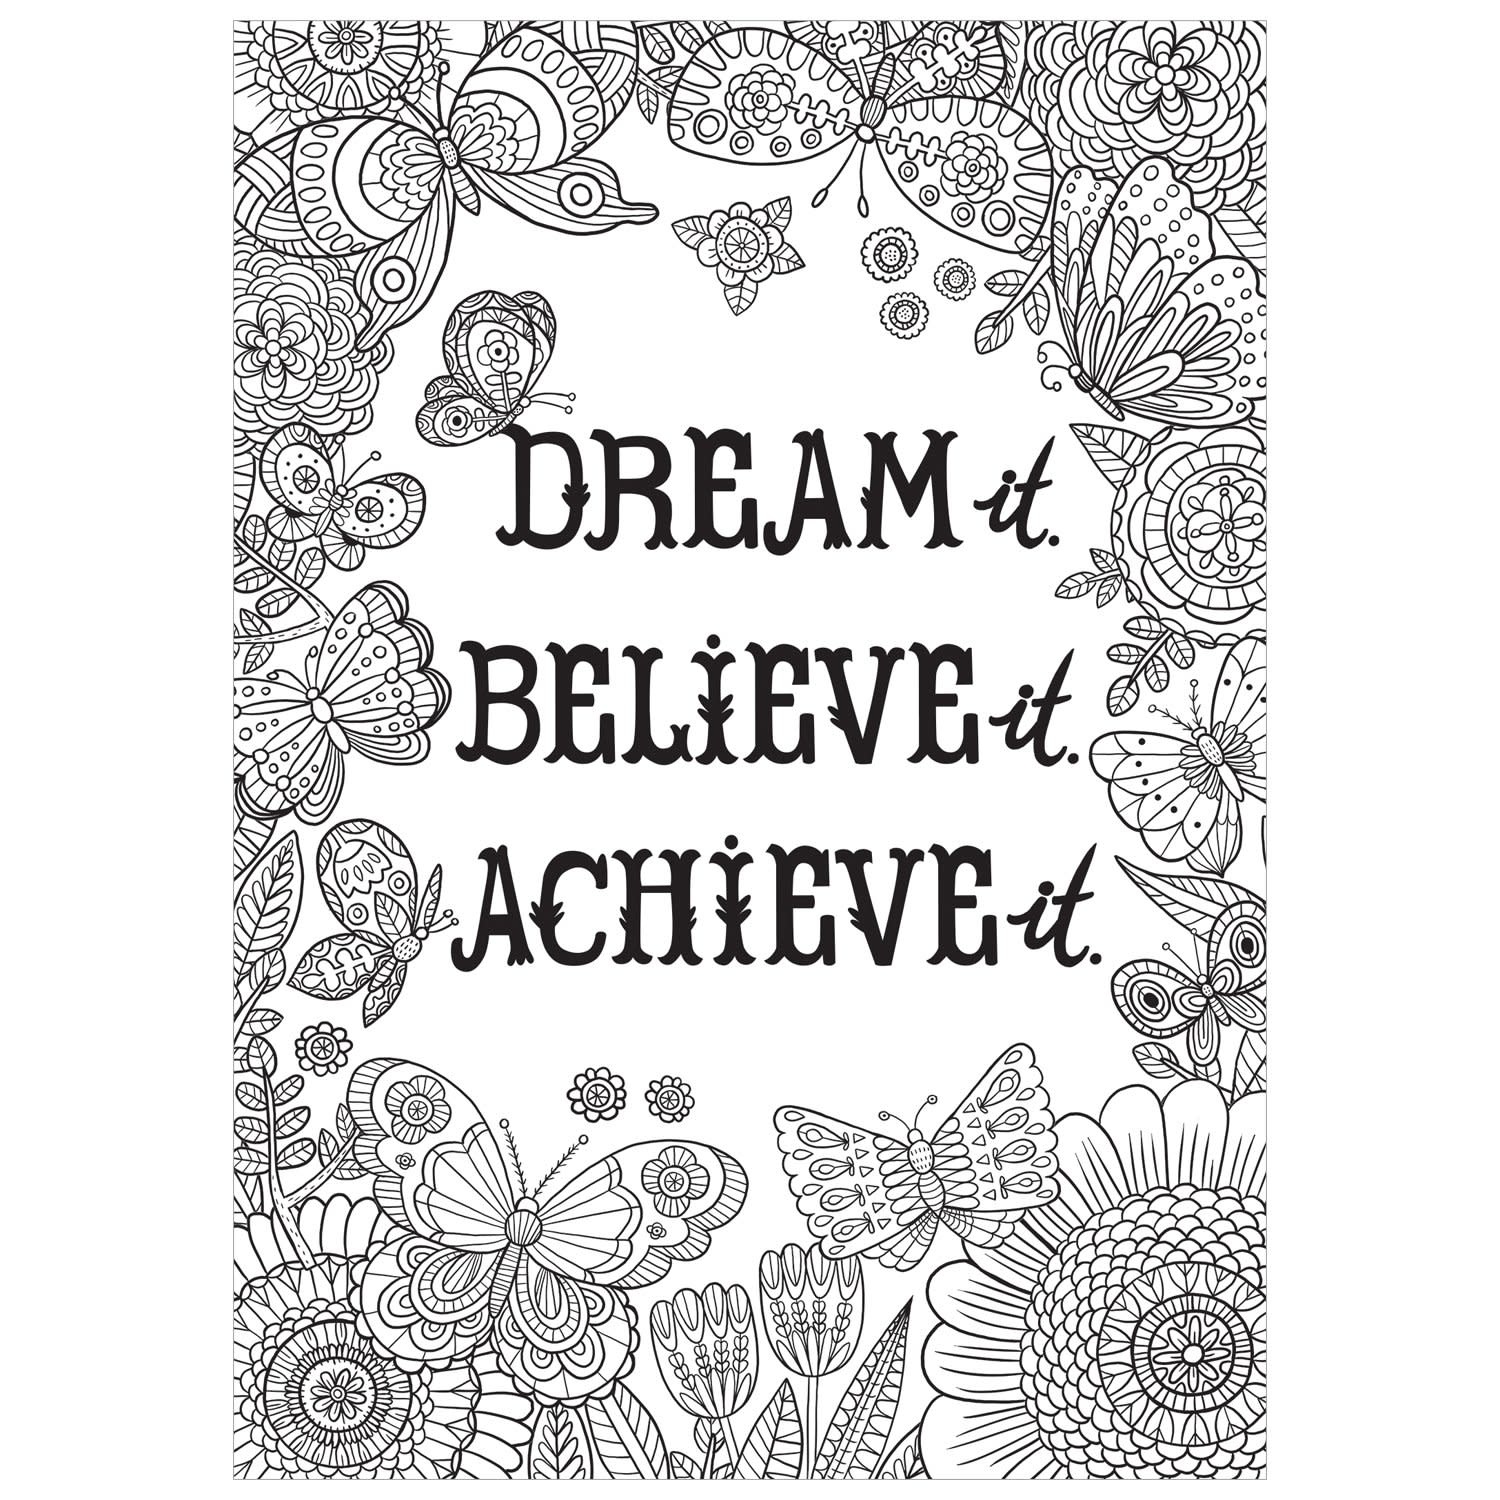 Dream It. Believe It. Achieve It.-Color Me-Poster